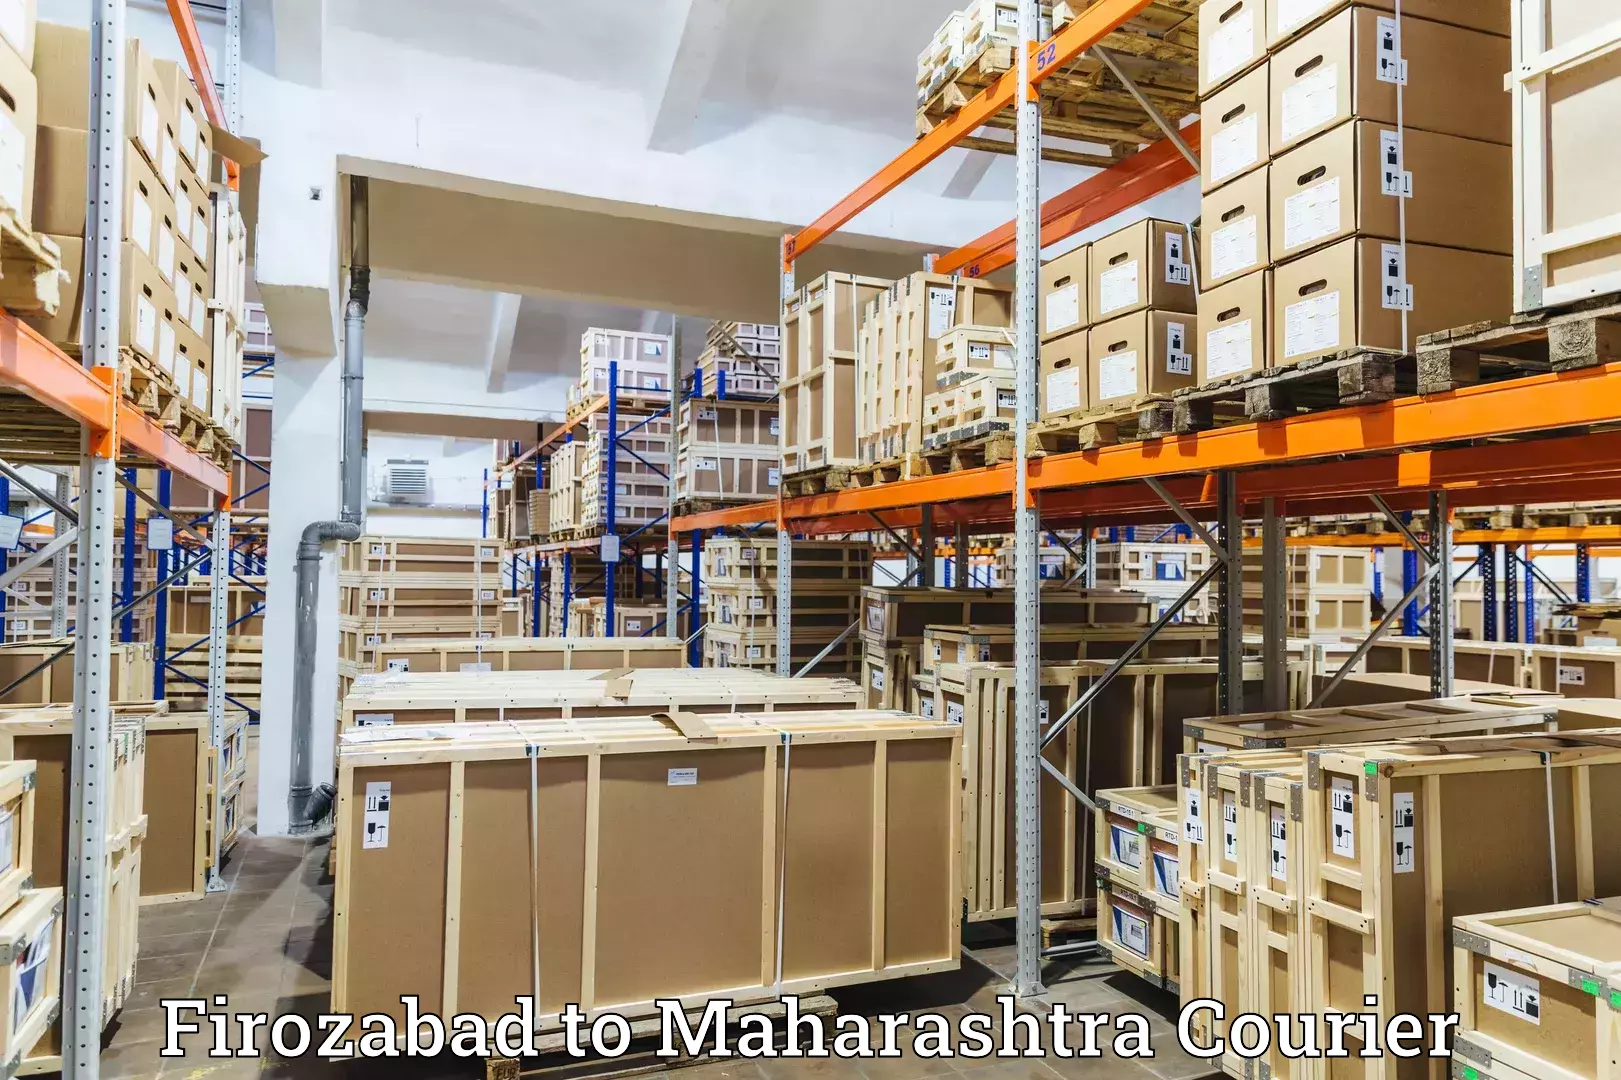 Premium courier services Firozabad to Maharashtra